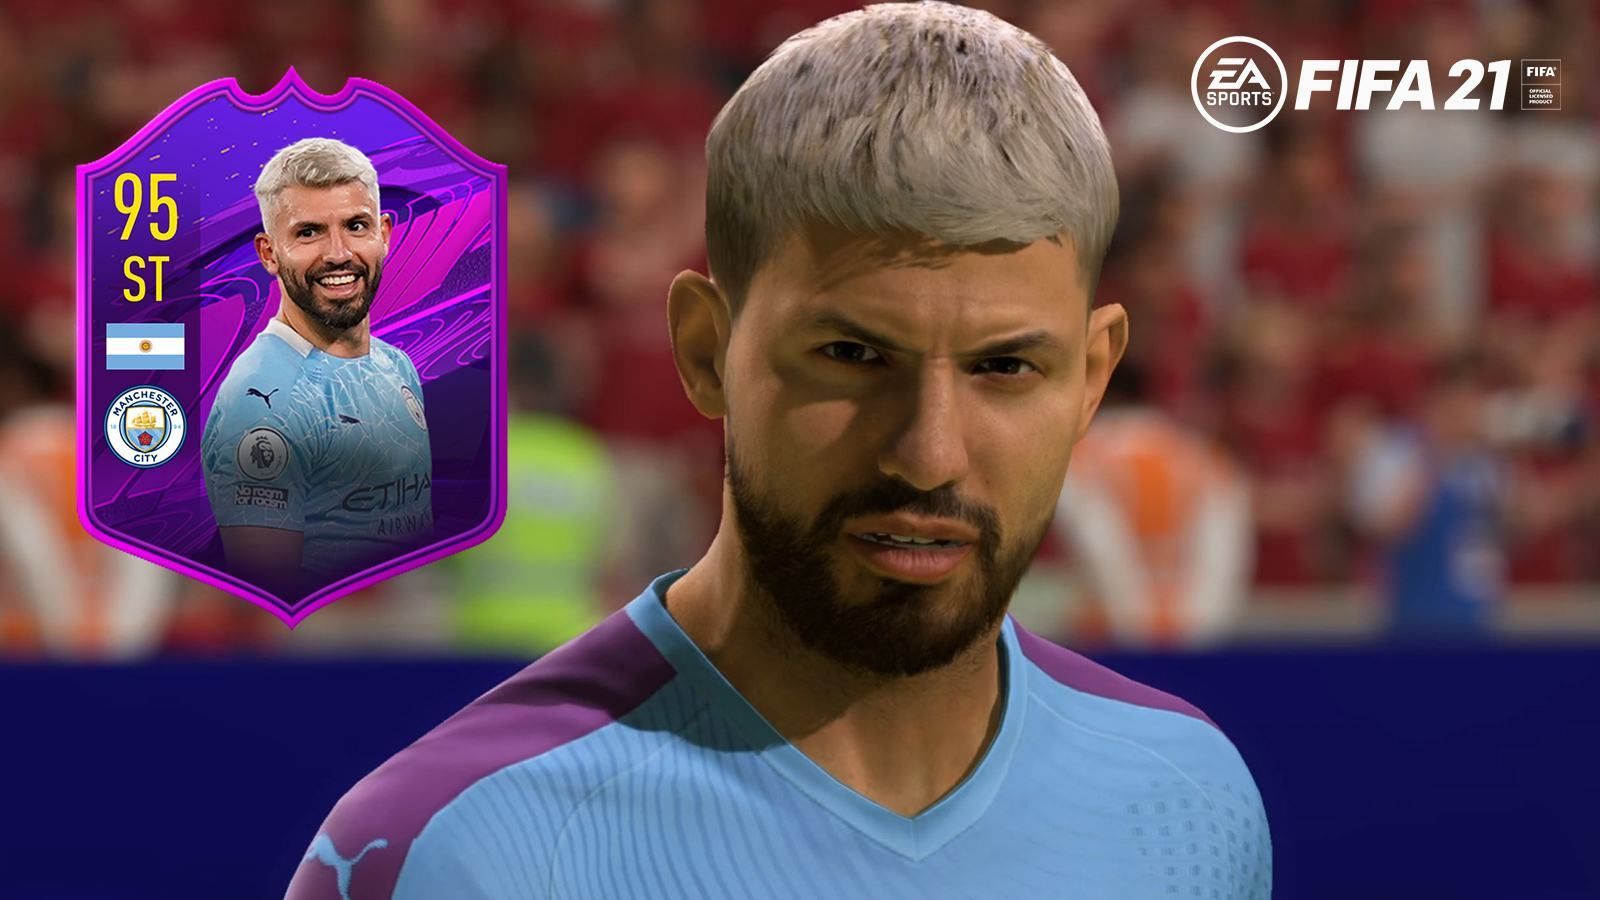 Les joueurs FIFA 21 réclament une carte spéciale d'Aguero après son départ de City - Dexerto.fr